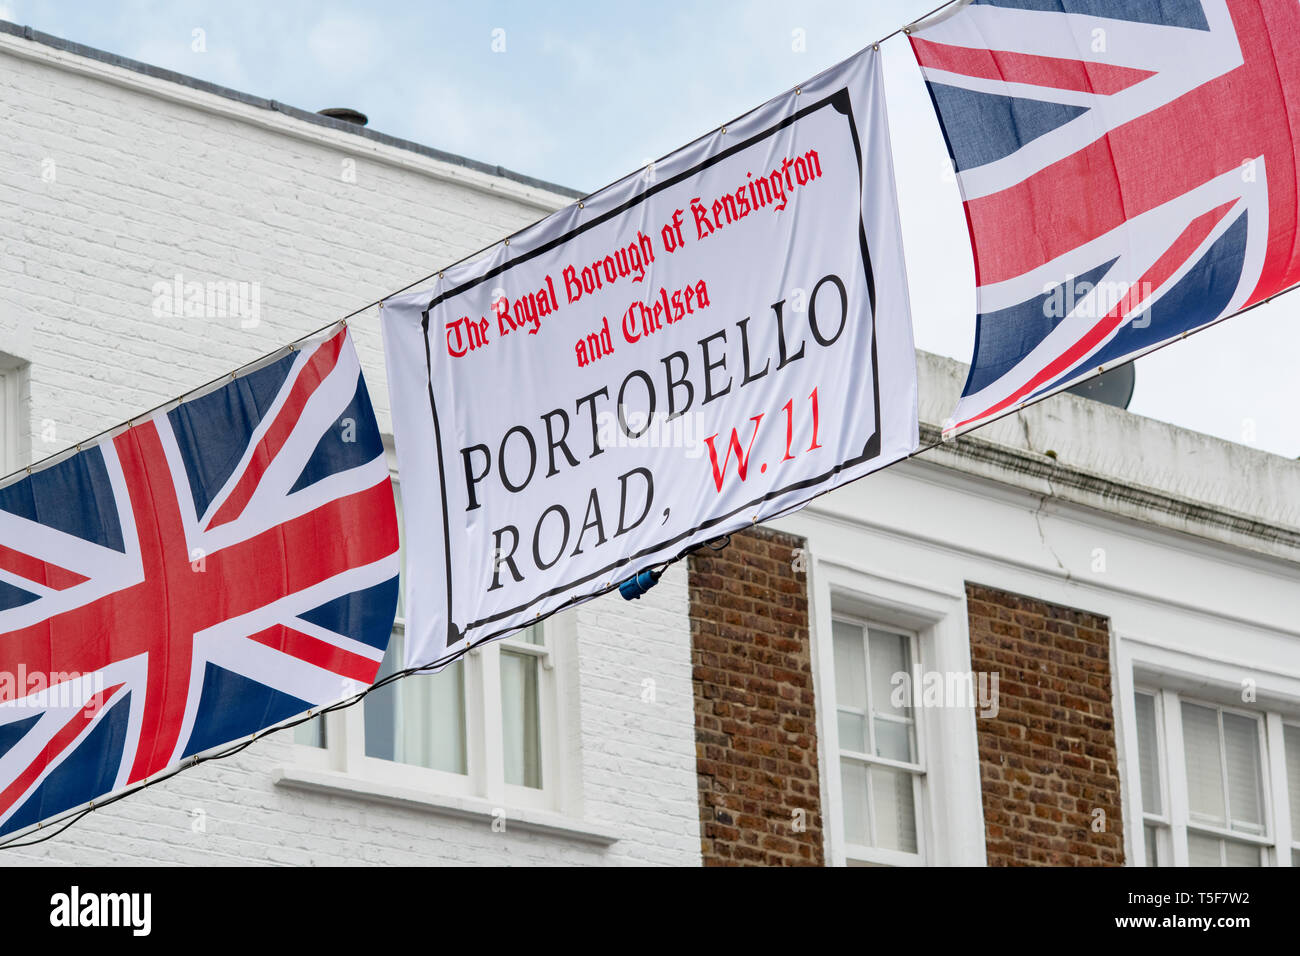 Union jack drapeaux et bannières de Portobello Road tendus en travers de la route. Portobello Road, Notting Hill, Londres, Angleterre Banque D'Images